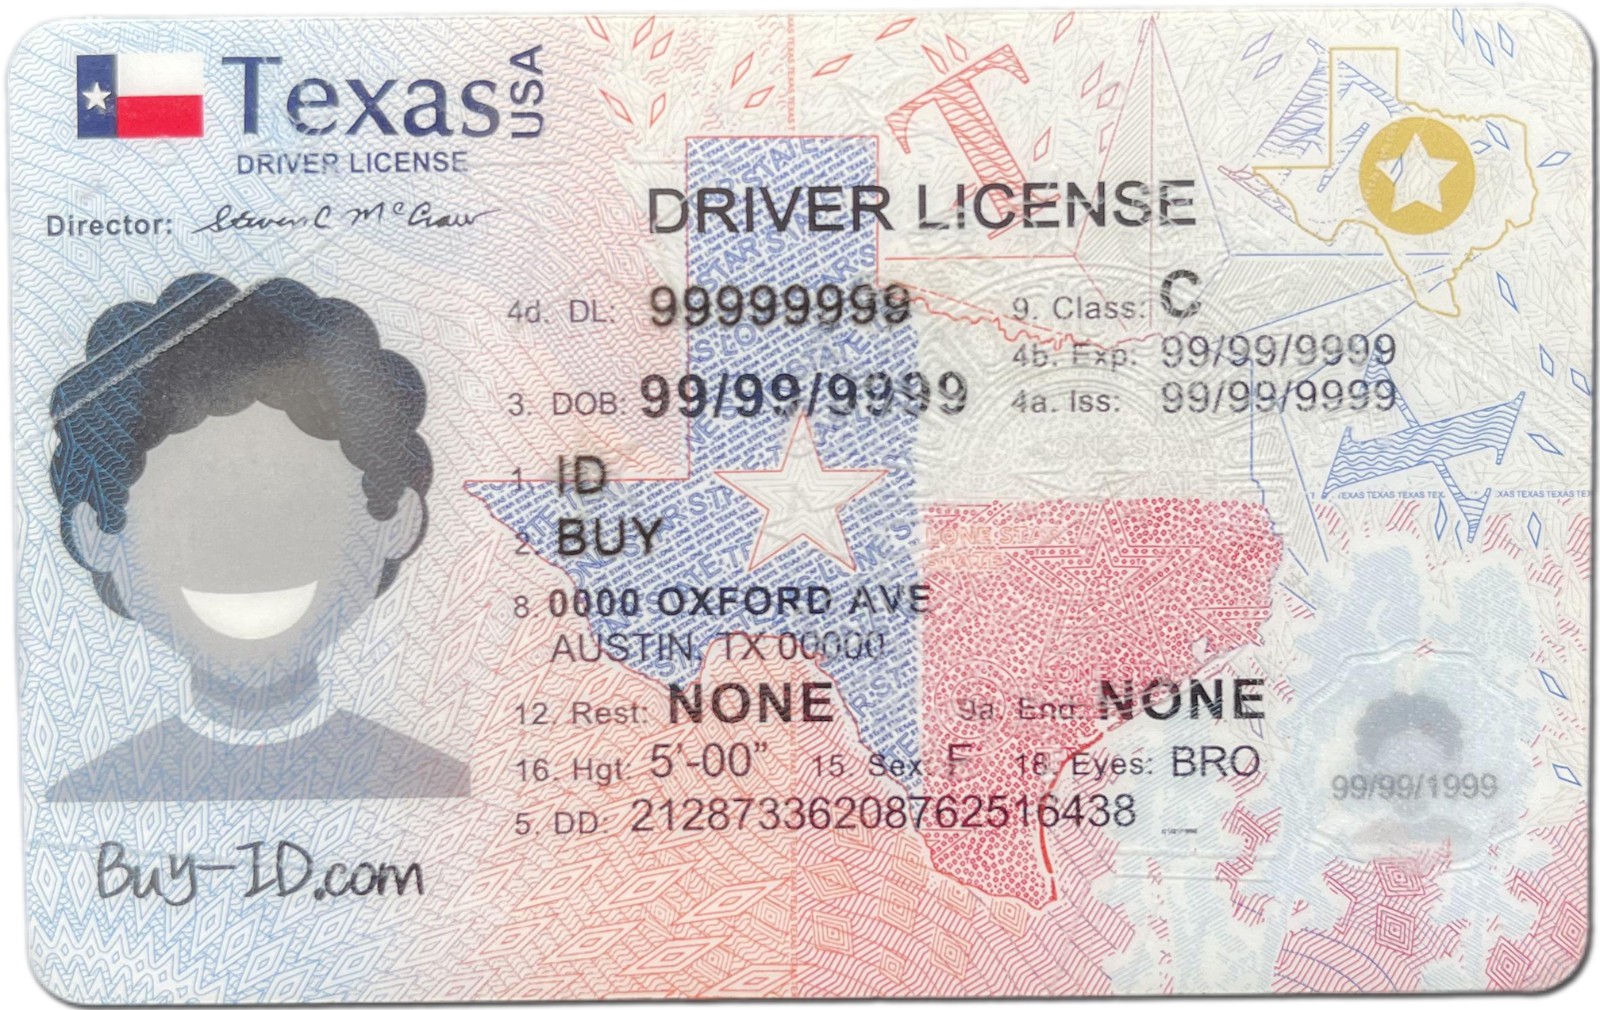 New Texas ID-Buy-ID.com